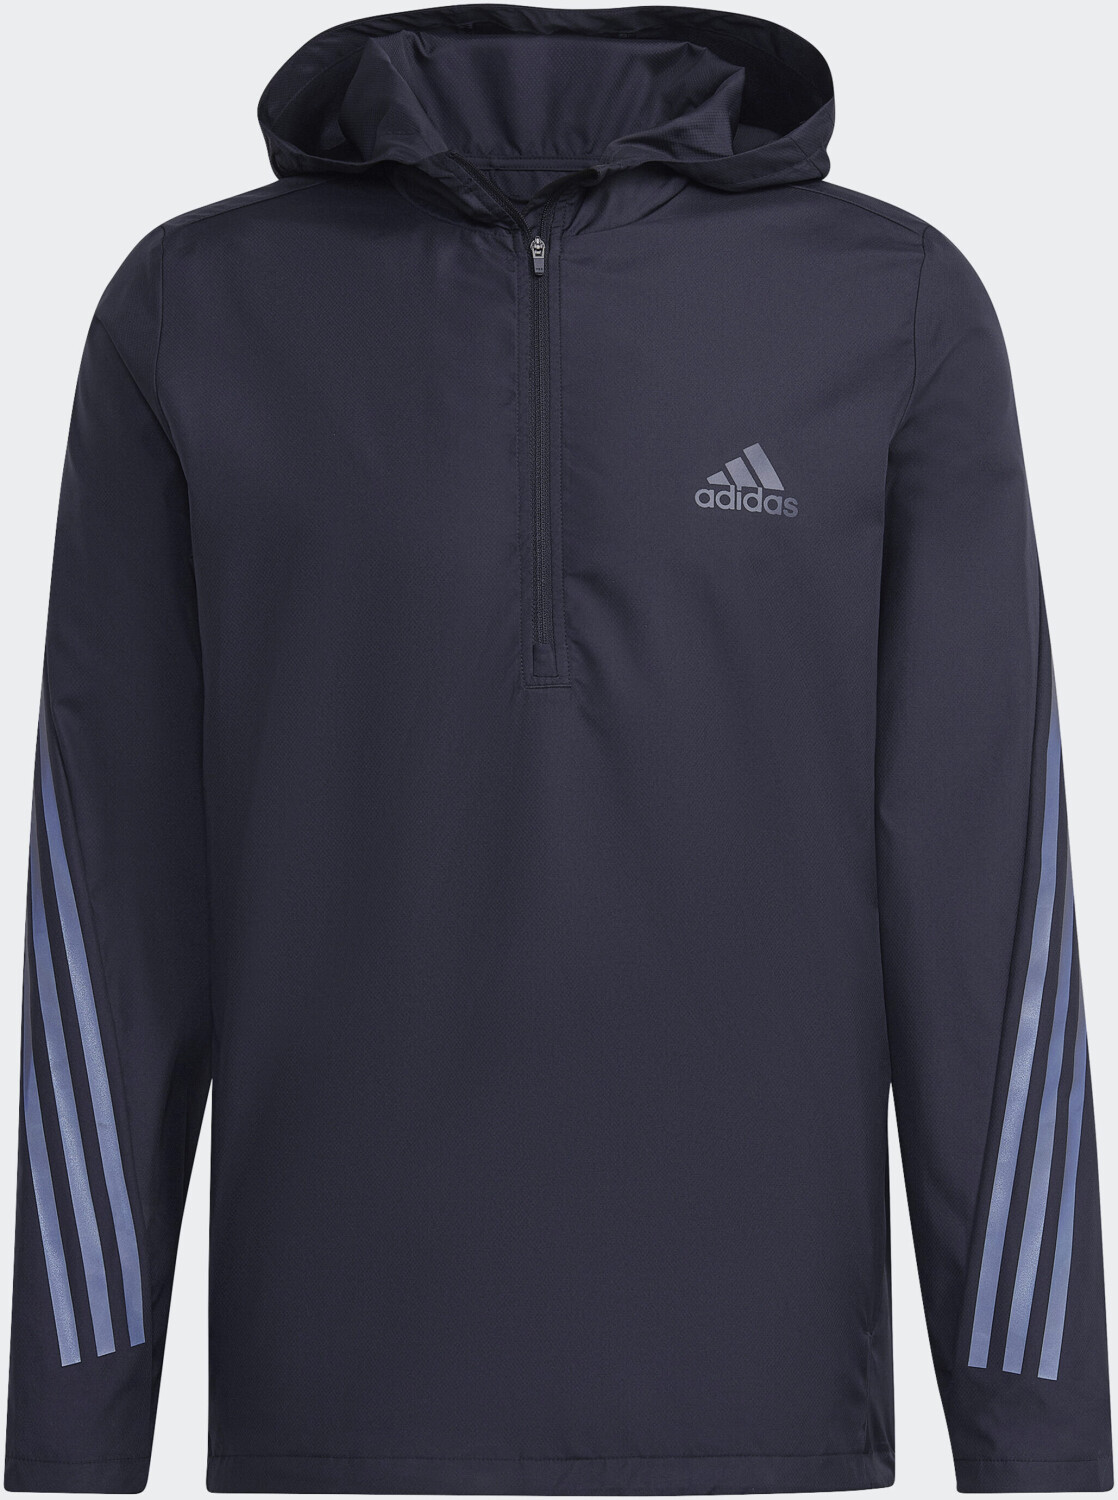 Adidas Run Icons 3-Stripe Jacket Men black ab 53,49 € | Preisvergleich bei